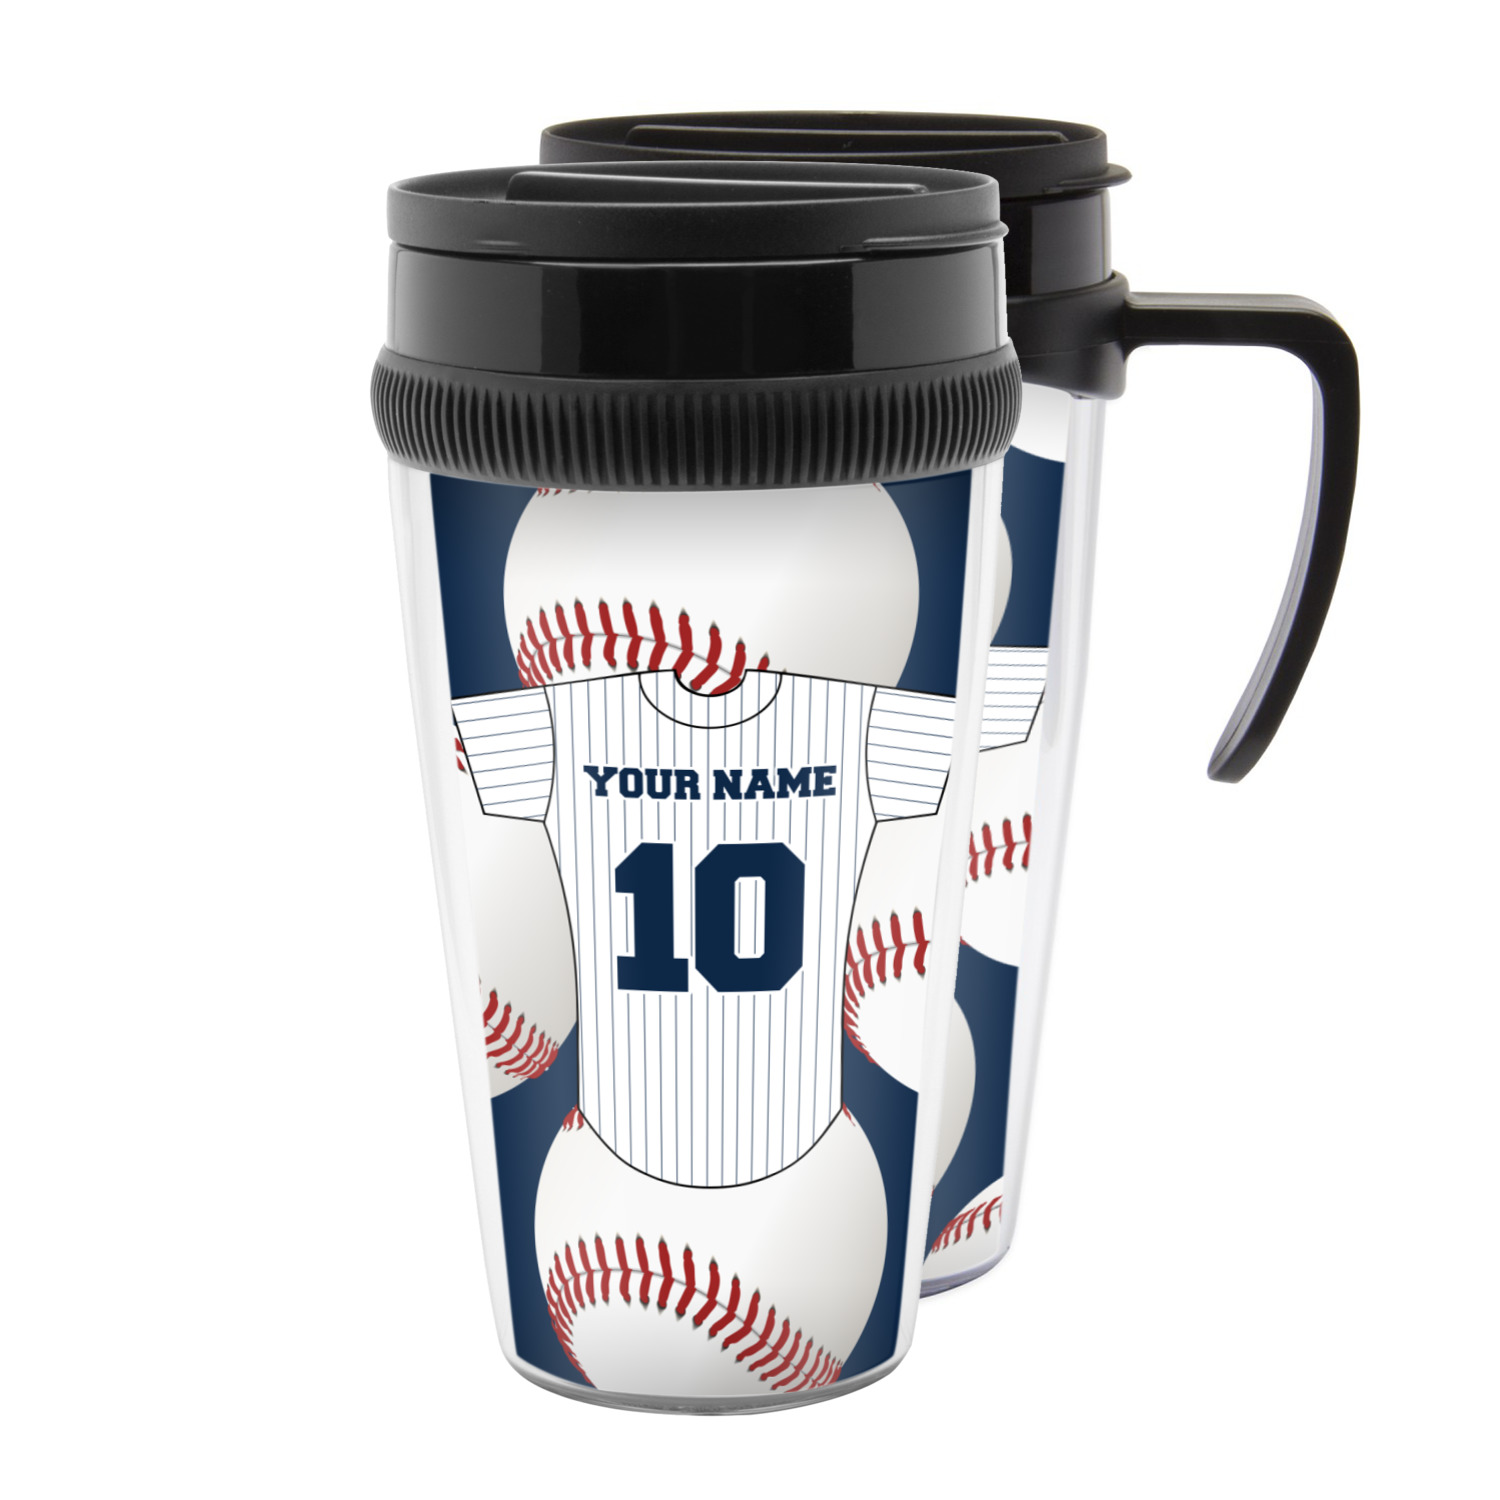 personalized travel mugs baseball